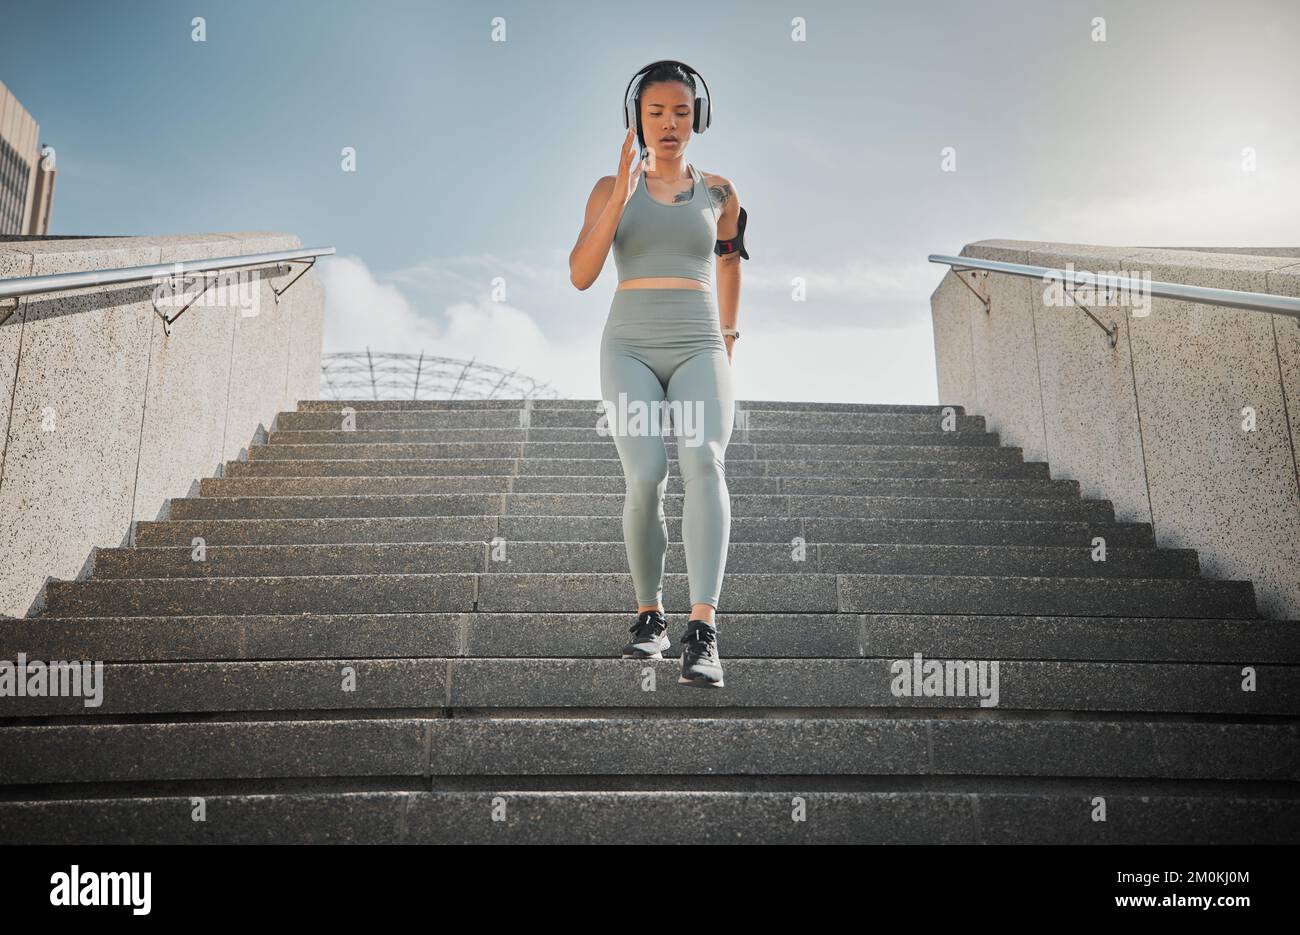 Junge gemischte Sportlerin hört Musik über Kopfhörer, während sie draußen die Treppen eines Gebäudes hinunterläuft. Junge Frau konzentrierte sich auf ihre Geschwindigkeit Stockfoto